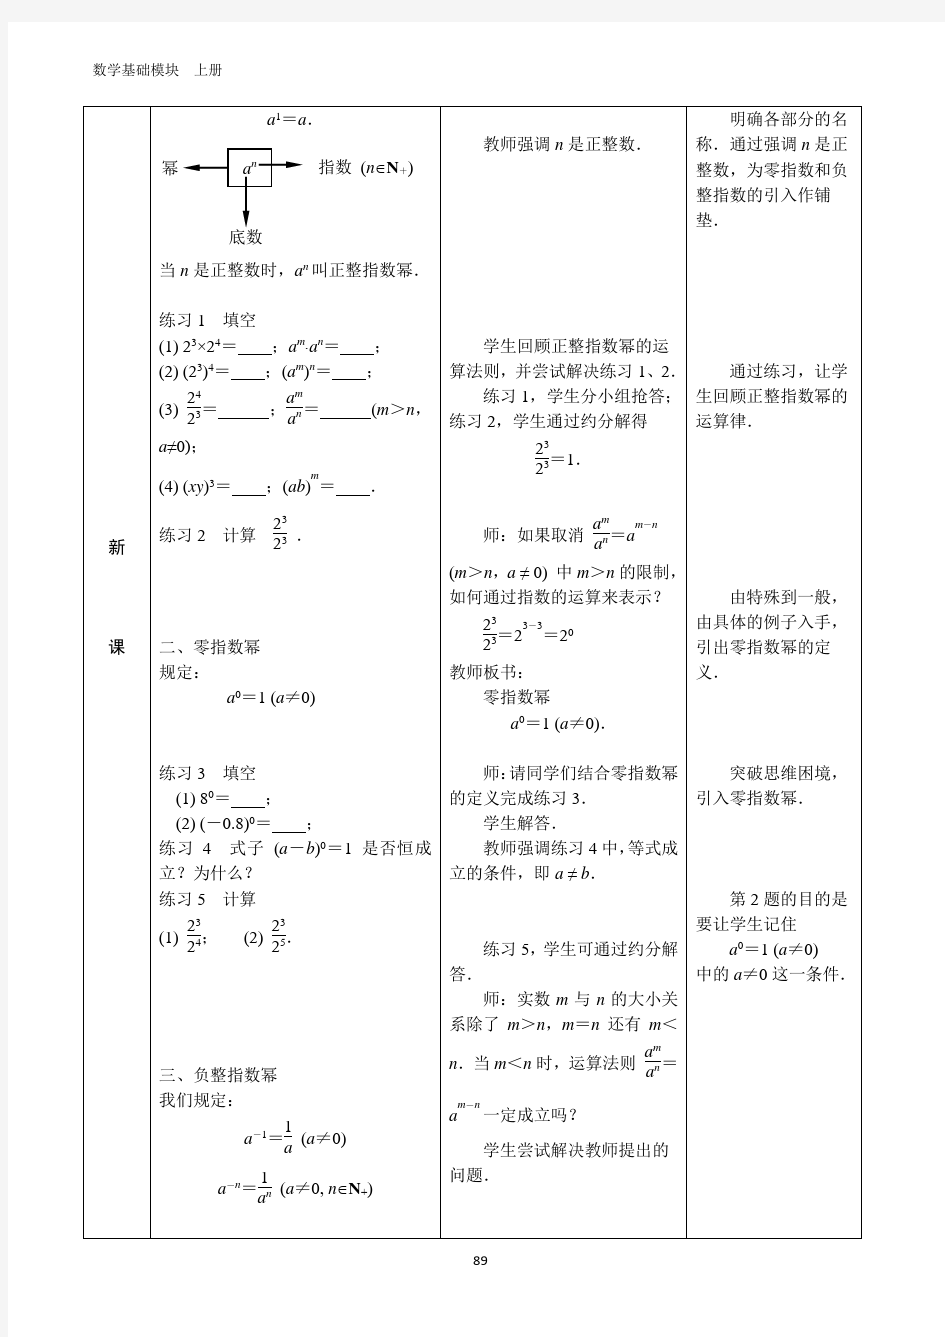 中职数学基础模块上册第四章指数、对数函数全册整套教案集